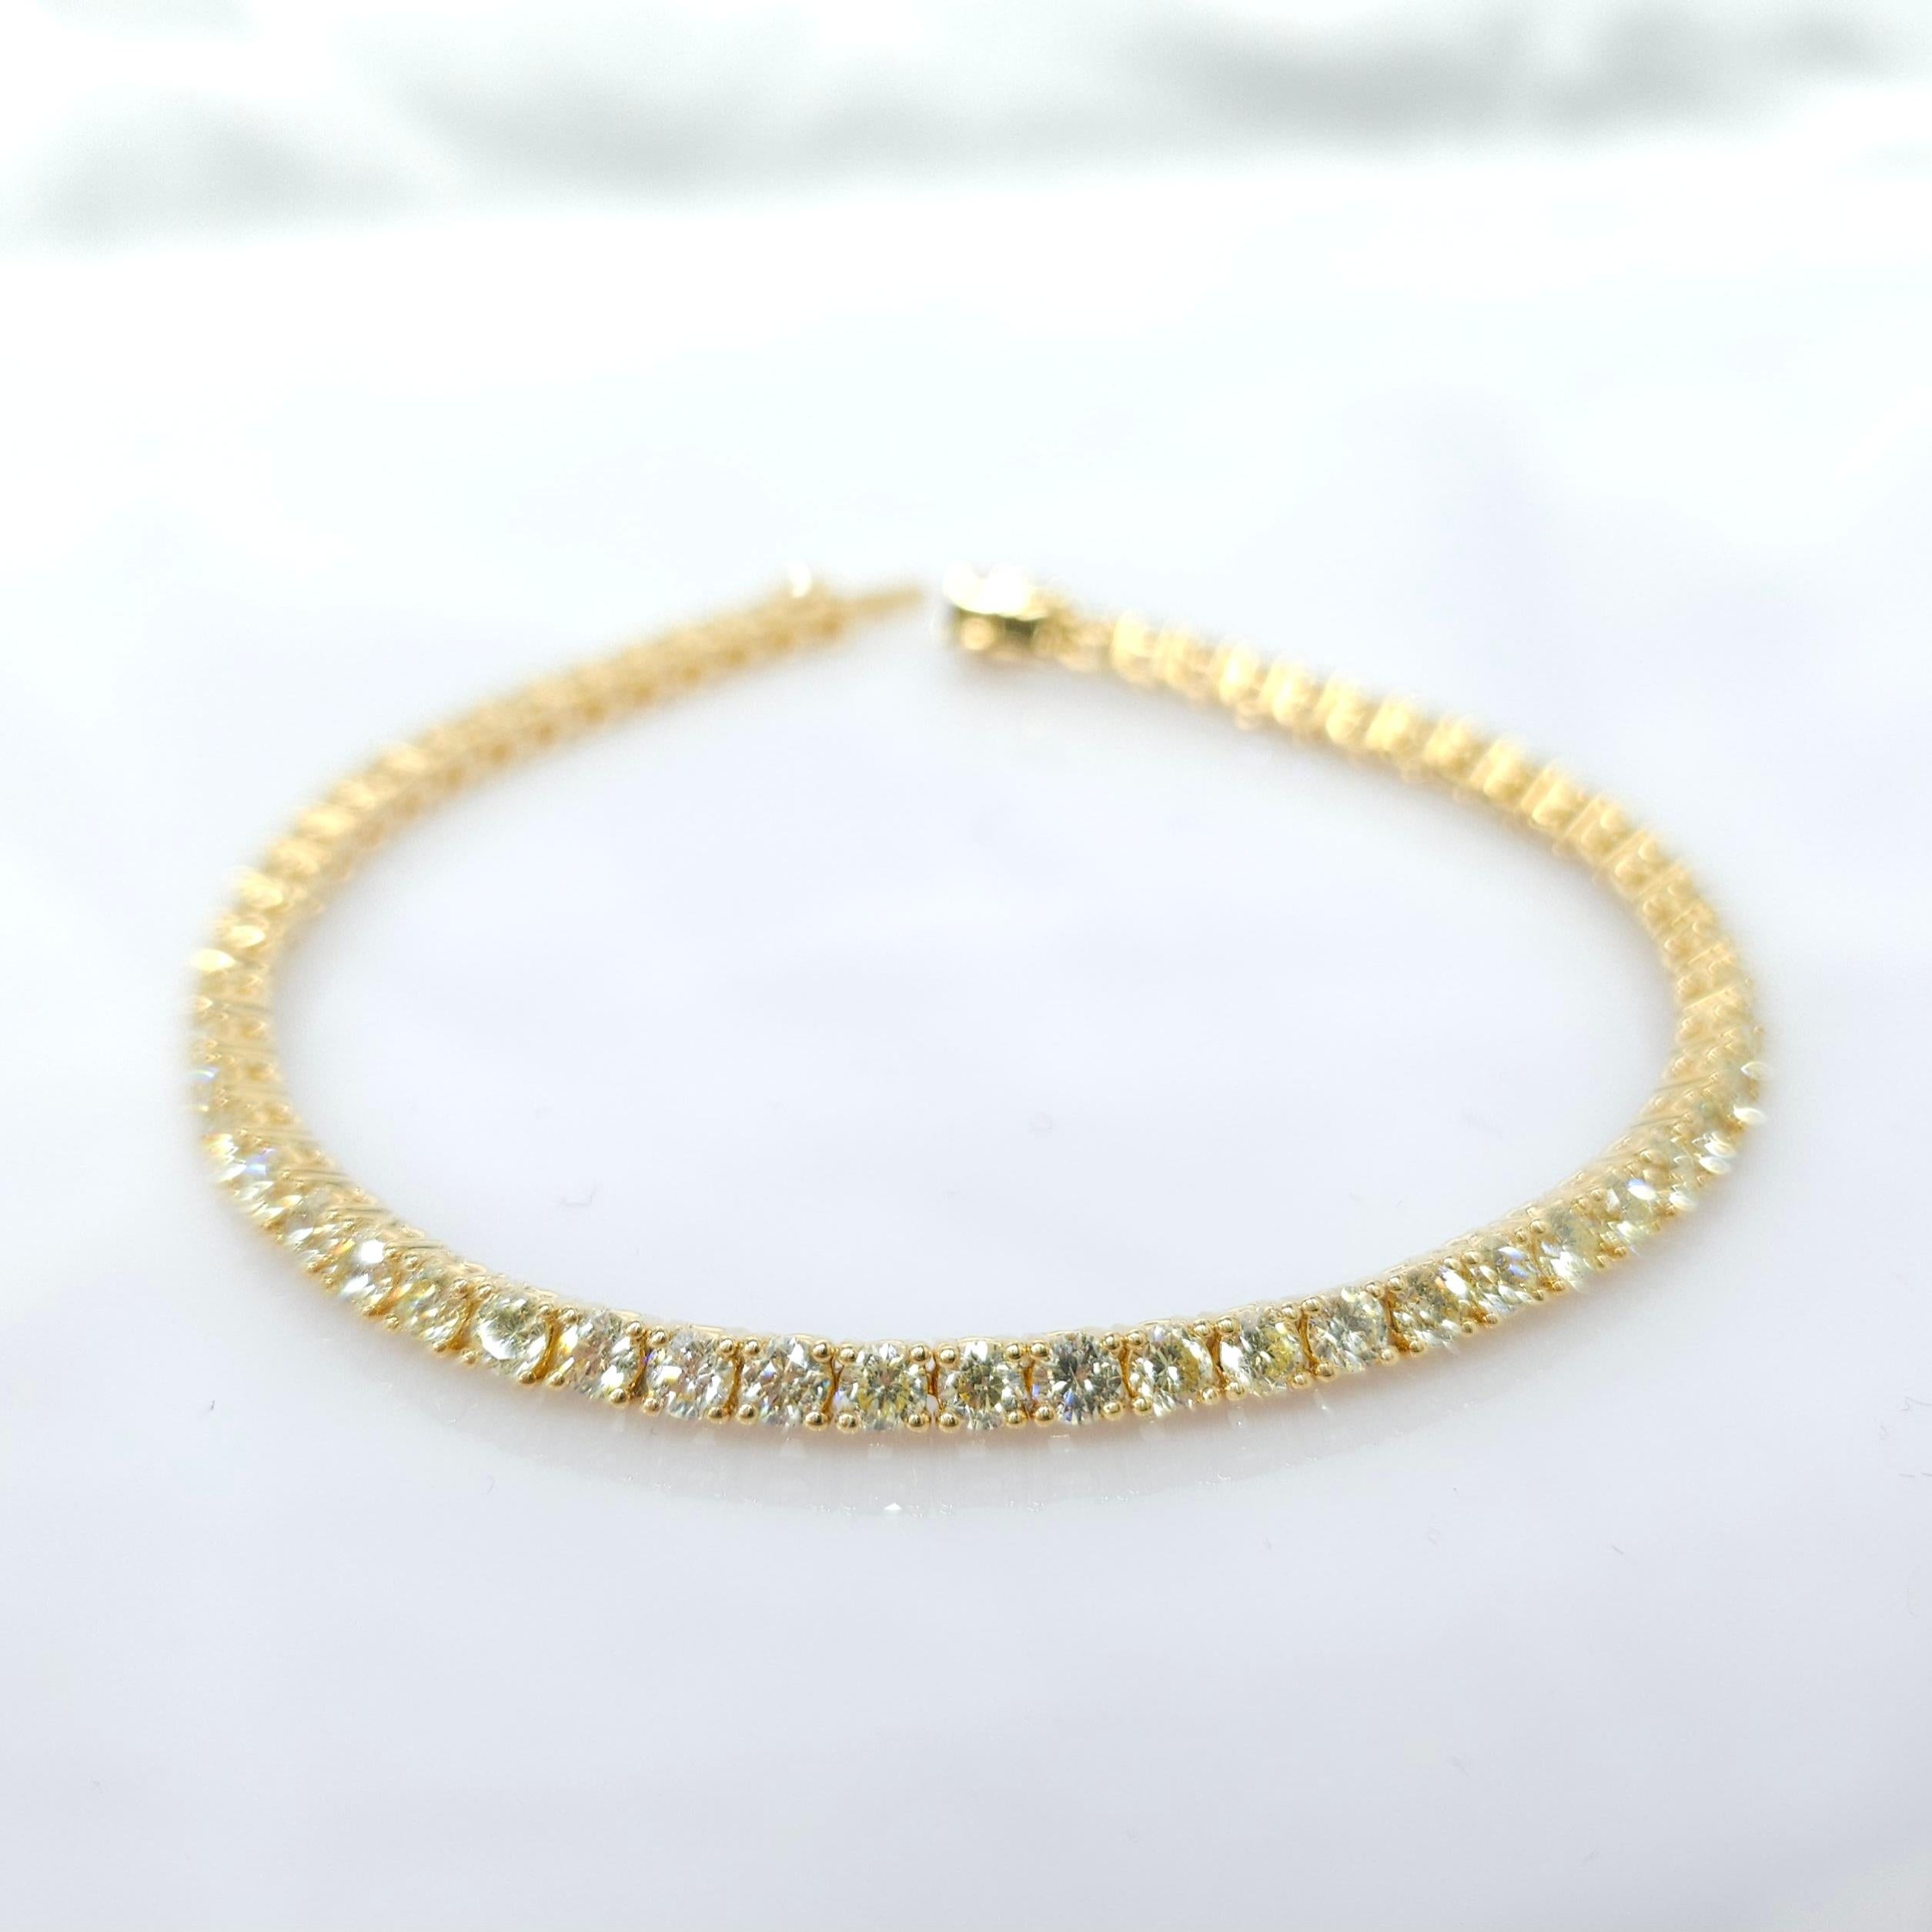 Élevez votre style avec la sophistication intemporelle de ce bracelet de tennis en or jaune 18 carats et diamants ronds totaux de 4,73 carats. Cette pièce exquise respire l'élégance et le luxe, ce qui en fait un ajout polyvalent et éblouissant à